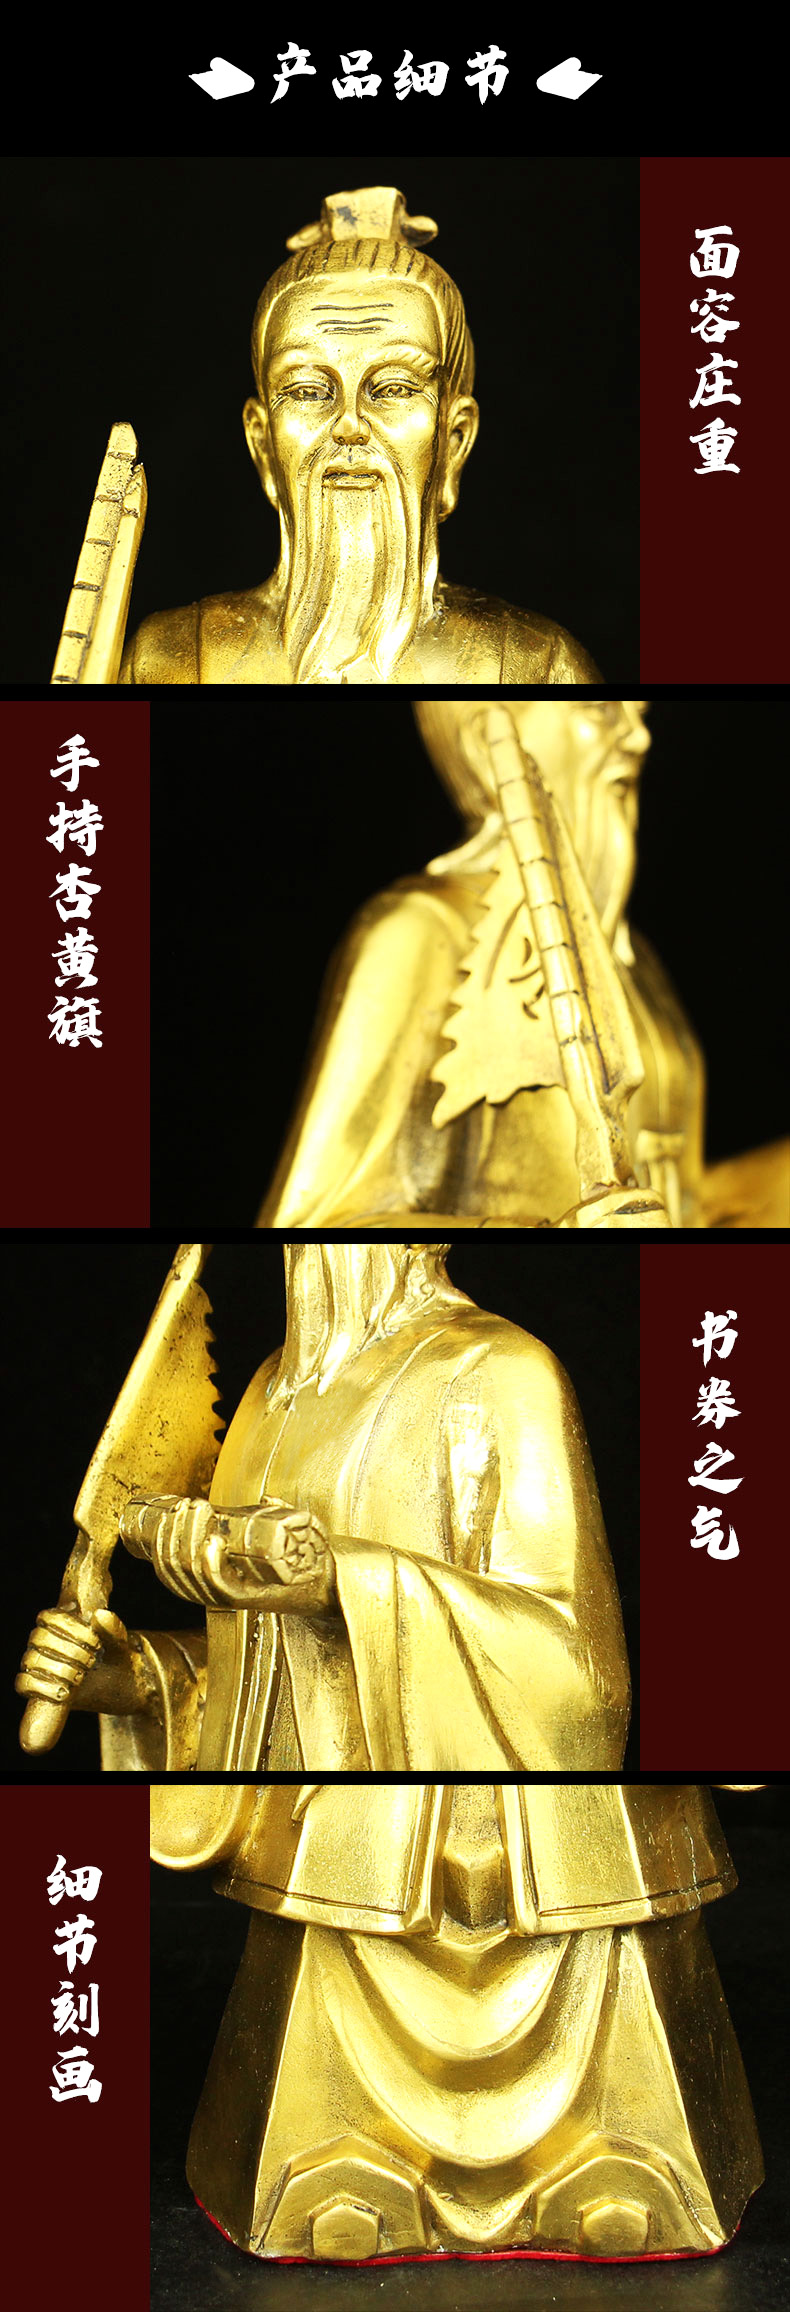 公在此开运纯铜姜子牙神像黄铜姜太公在此打神鞭钓鱼摆件装饰品紫铜色